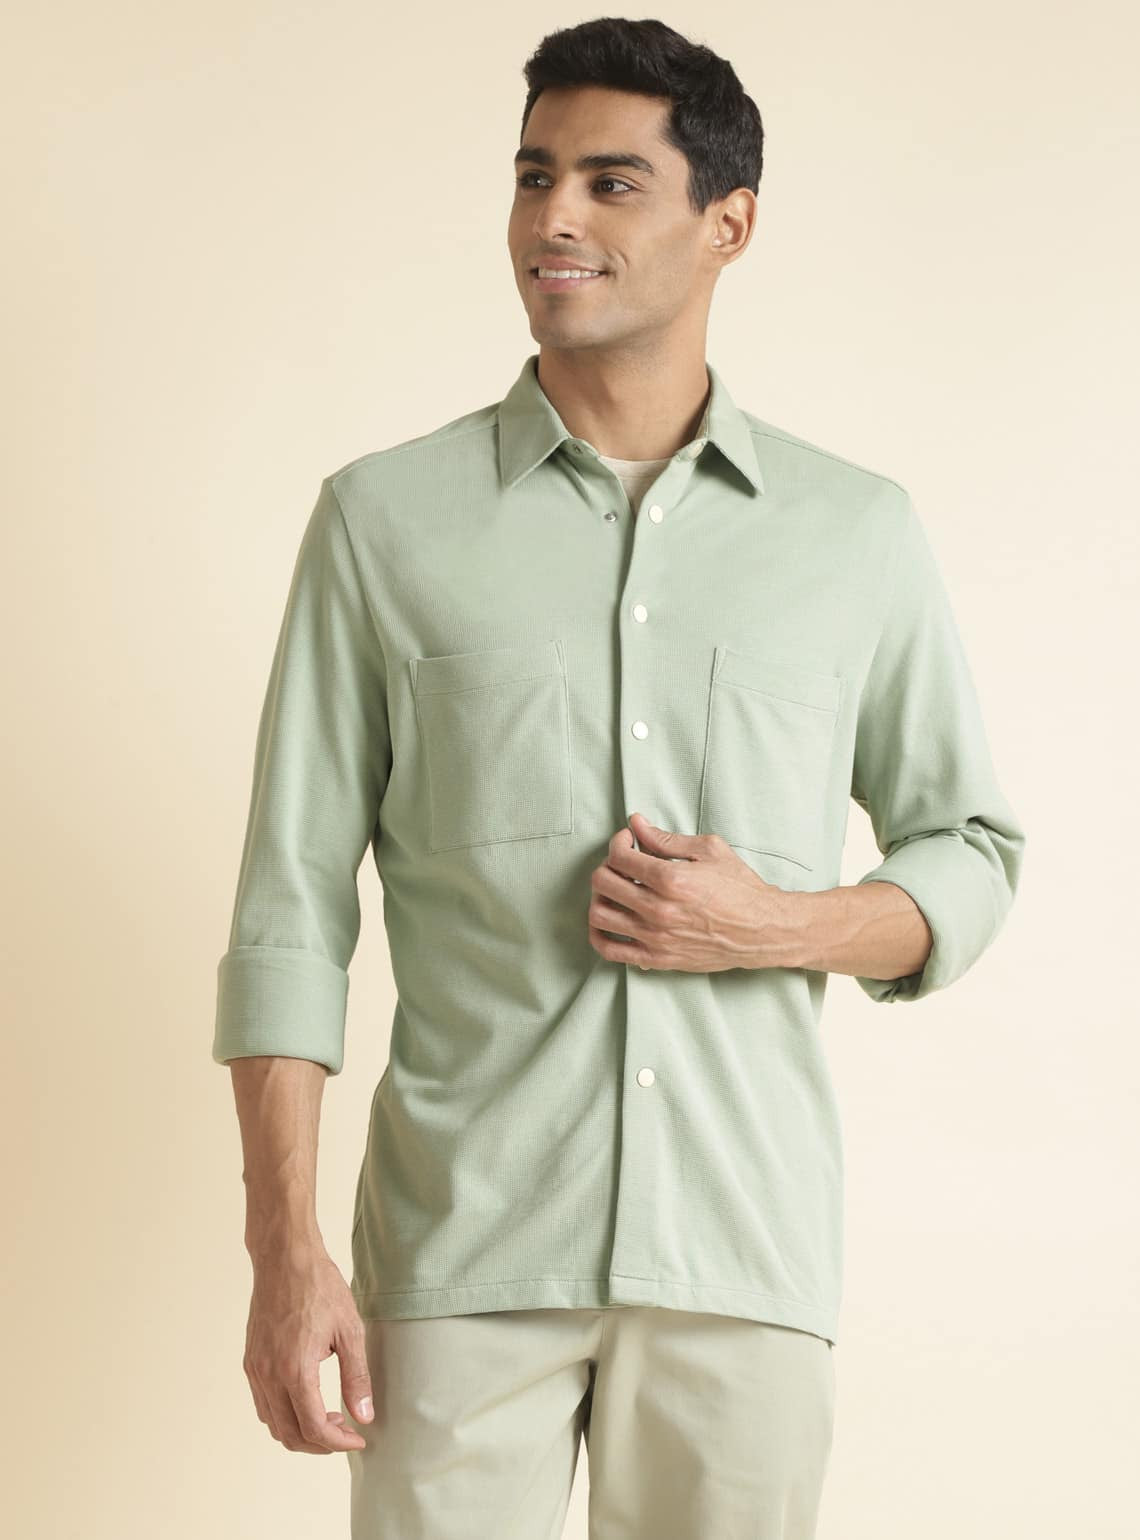 Artichoke Green Shirt